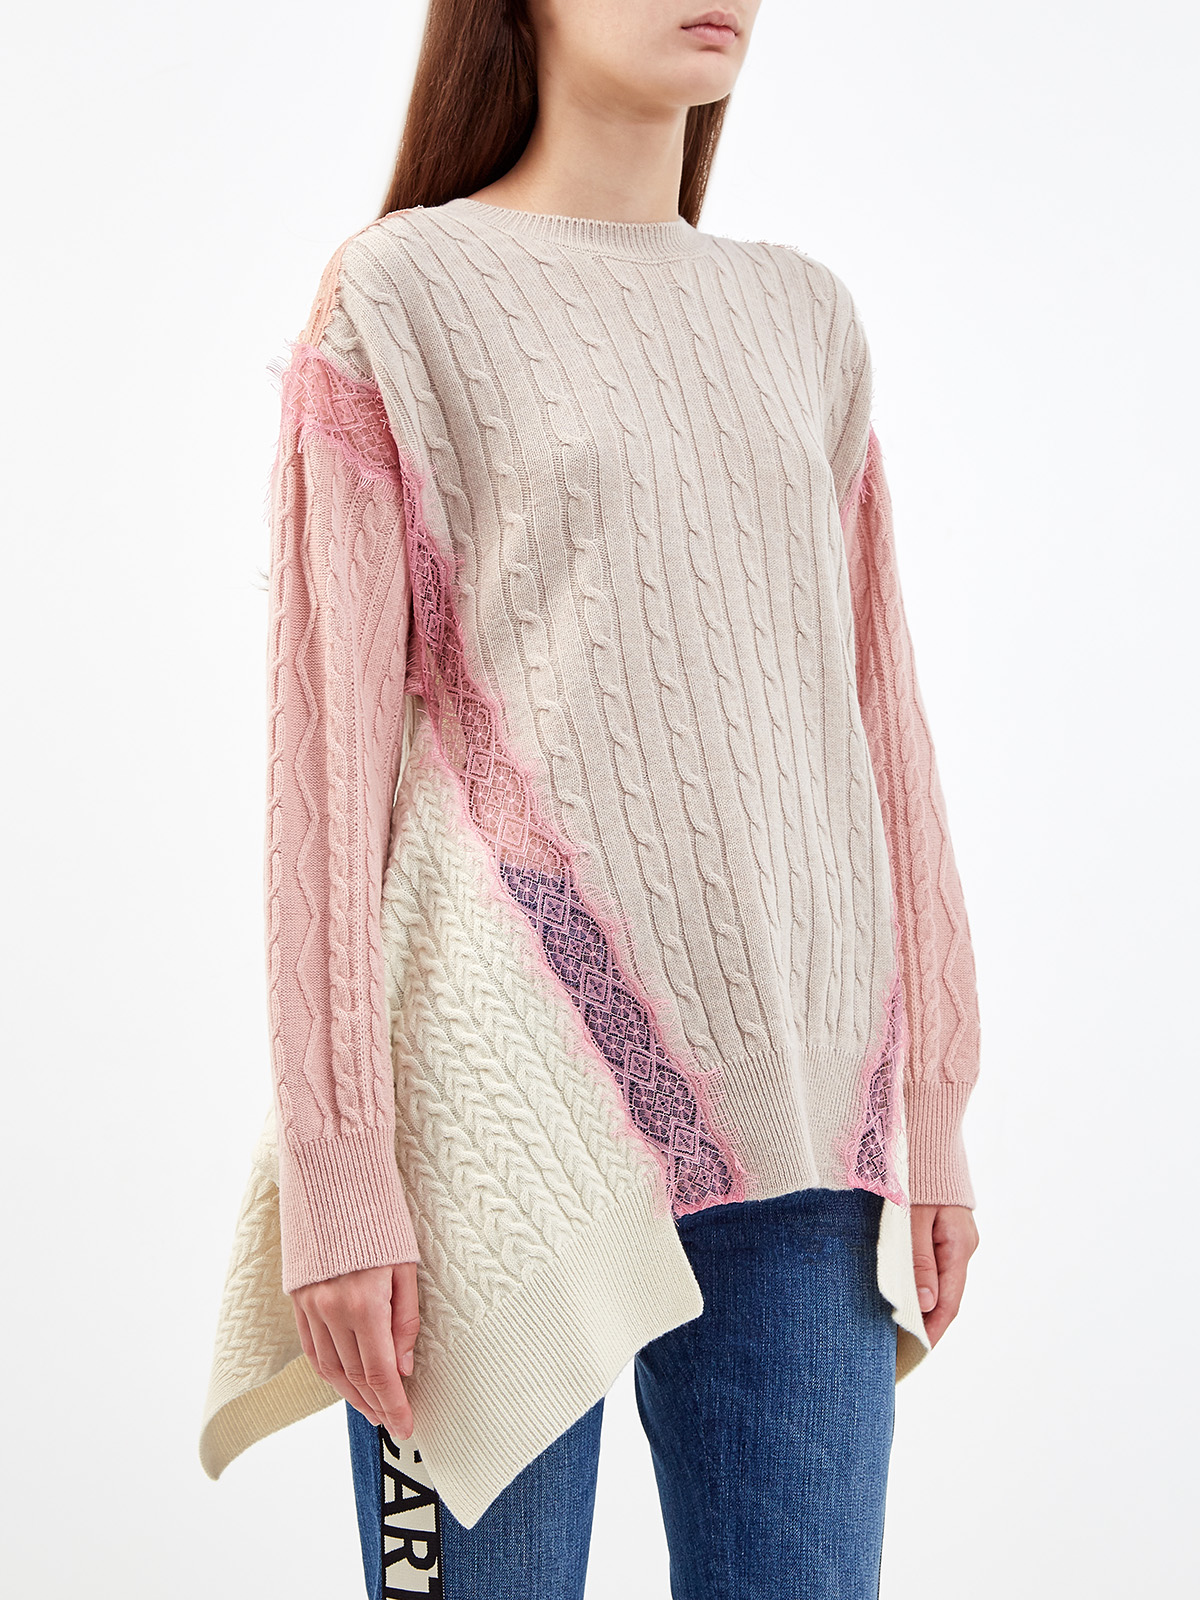 Шерстяной пуловер с объемным принтом и кружевом STELLA McCARTNEY, цвет розовый, размер 38;36 - фото 3